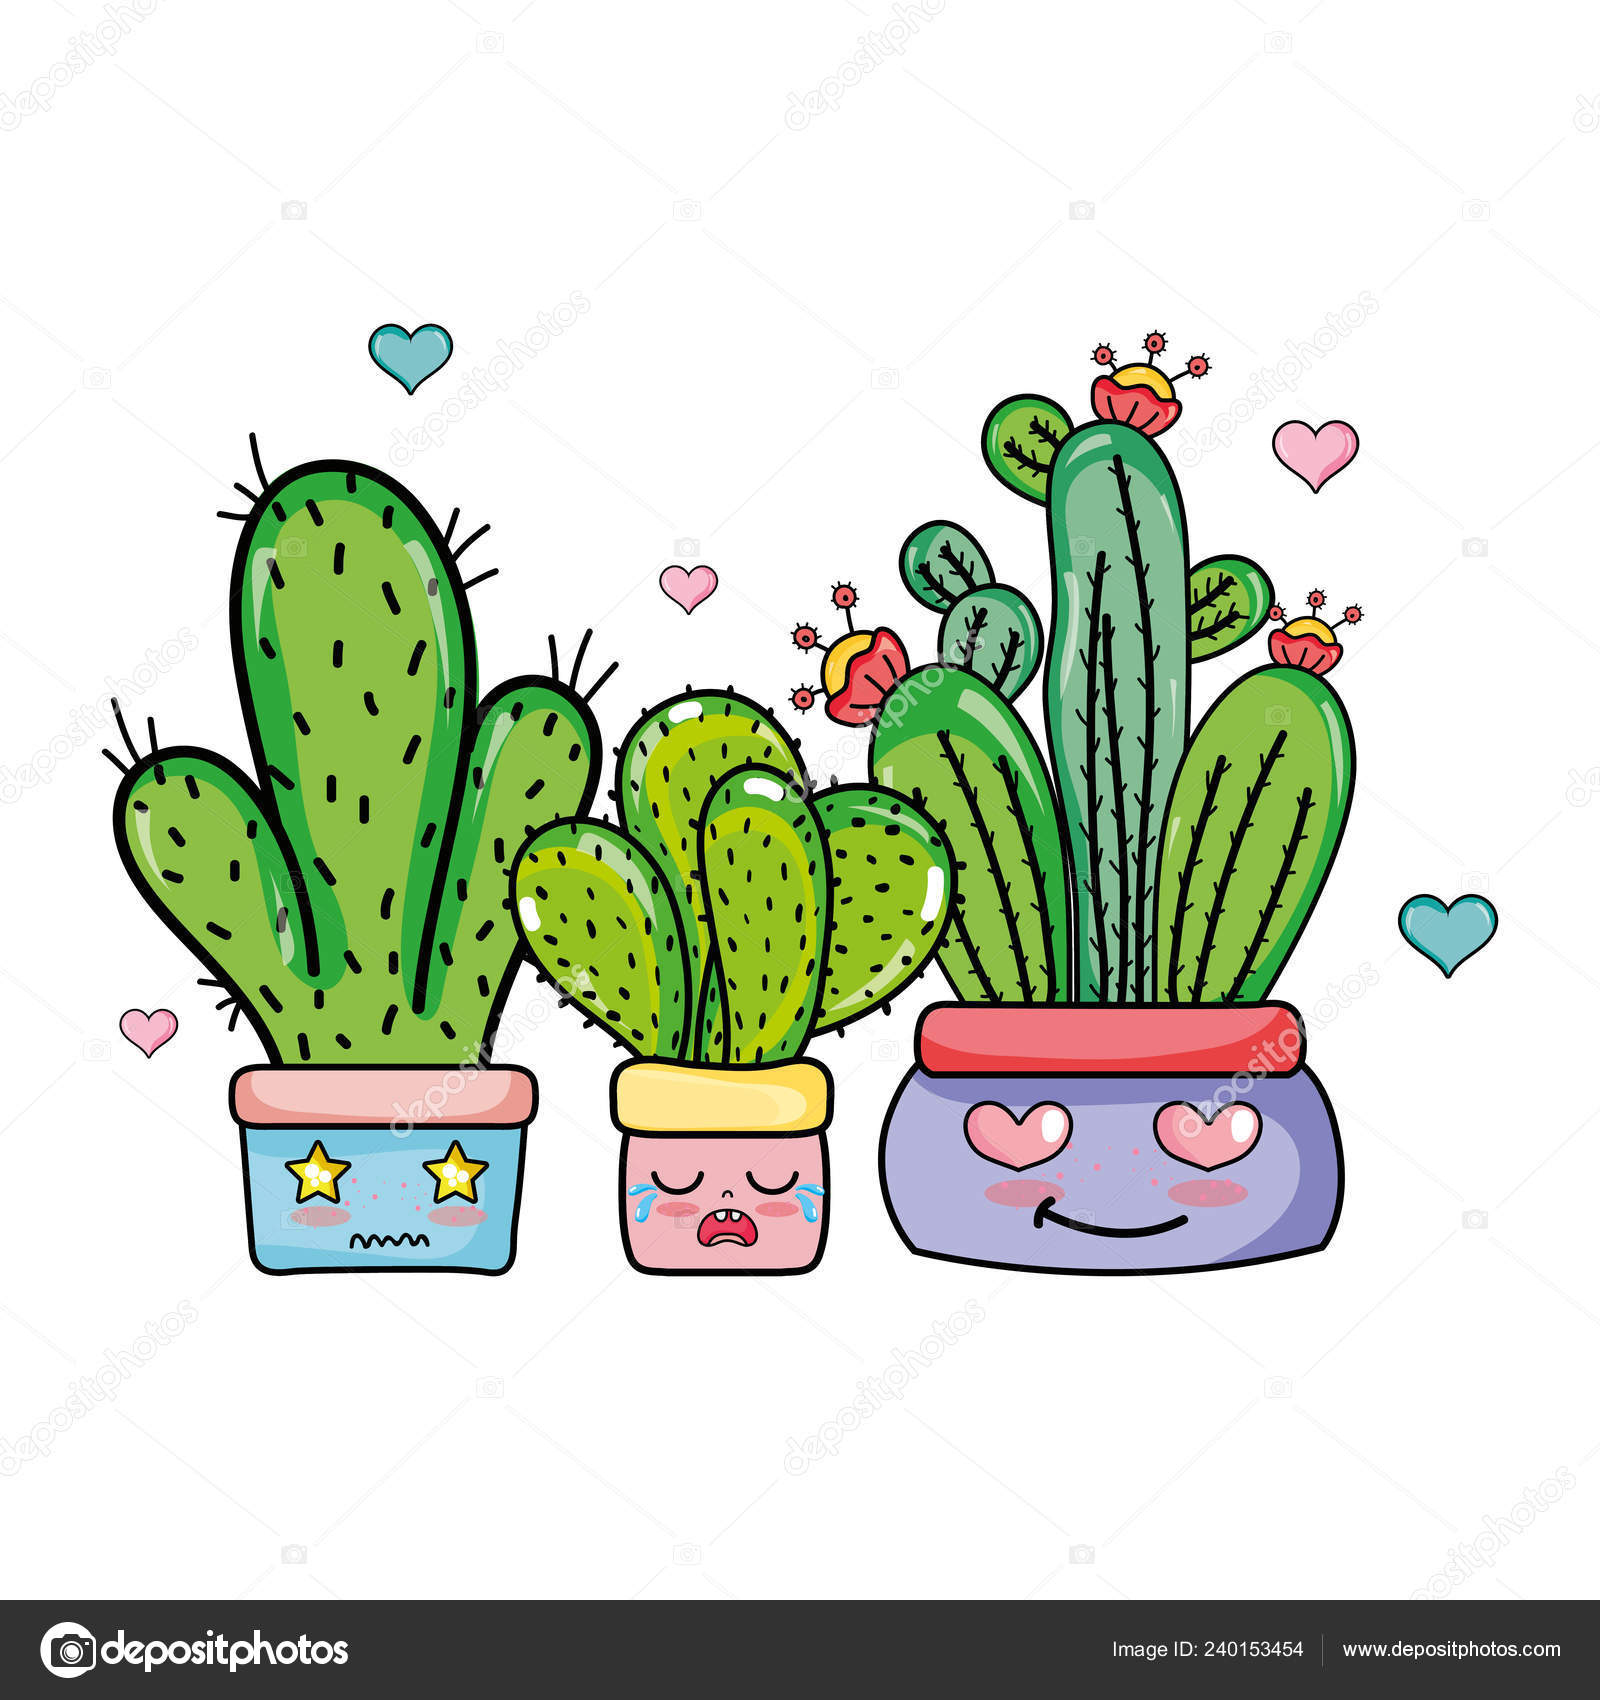 Cartoon Cactus Character with Flower and Cute Face. Kawaii Potted Plant  Vector Illustration Ilustração do Vetor - Ilustração de casa, divertimento:  147718182